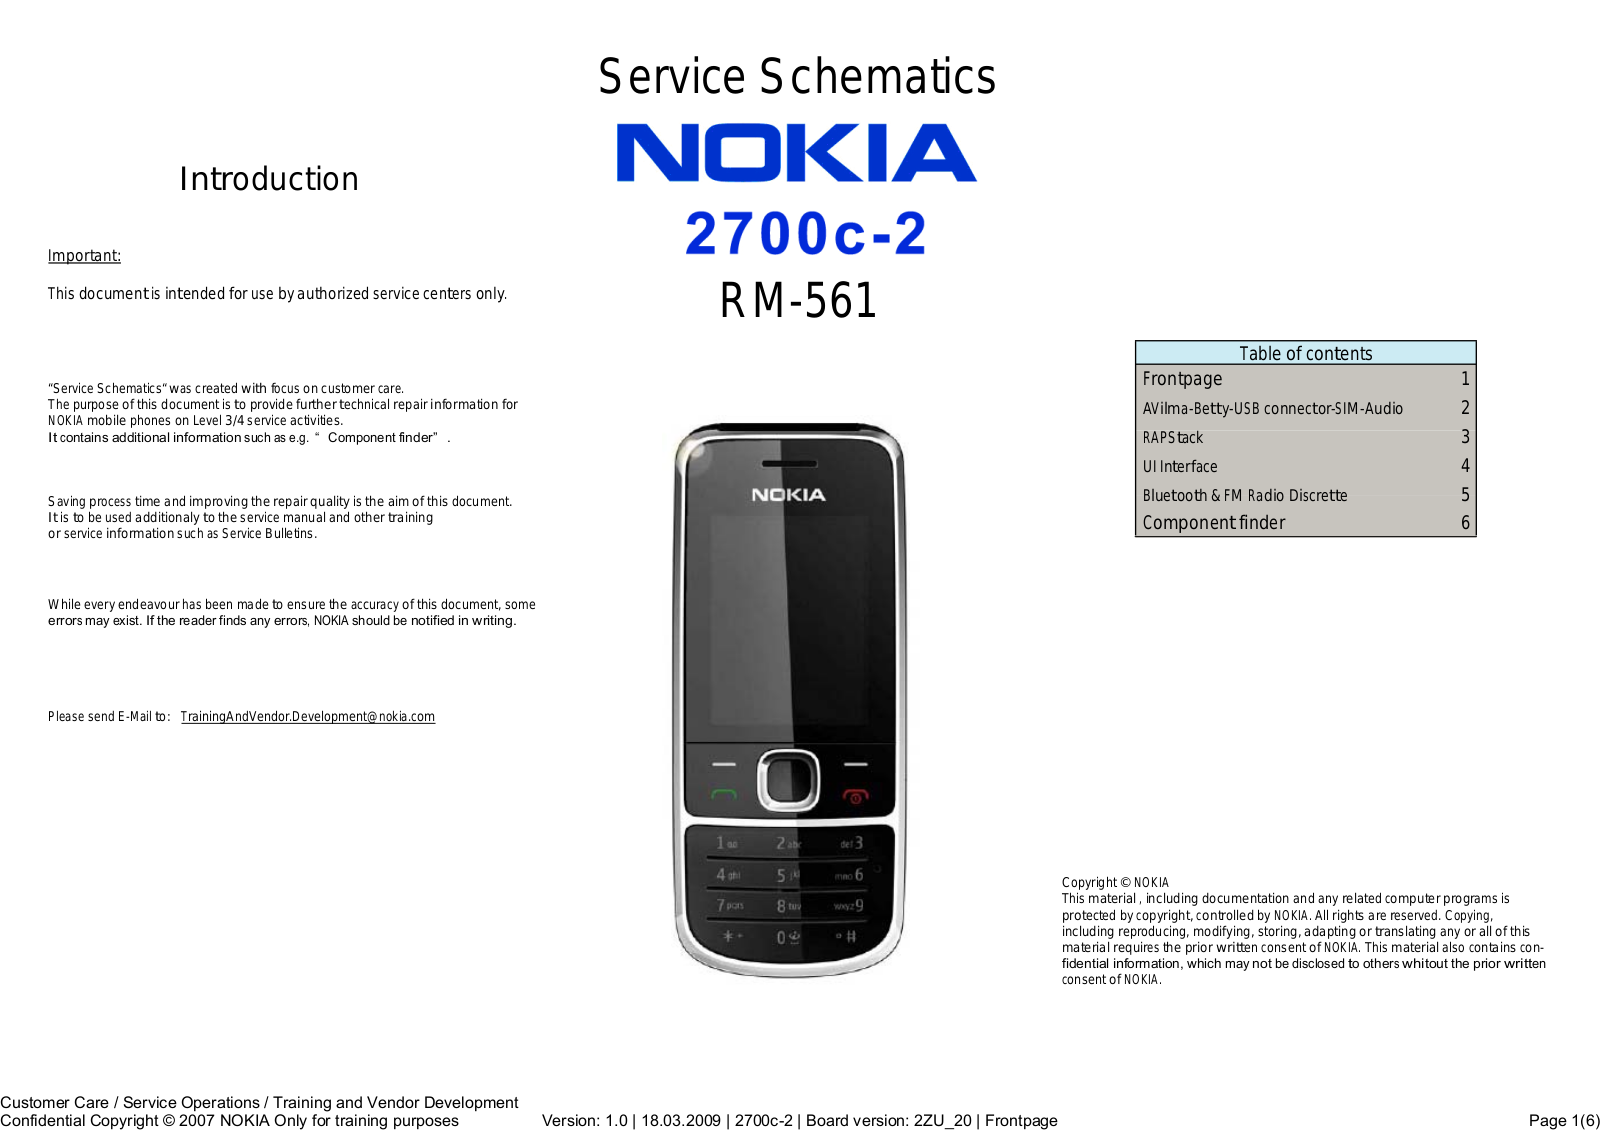 Nokia 2700c-2 RM-561 Schematic